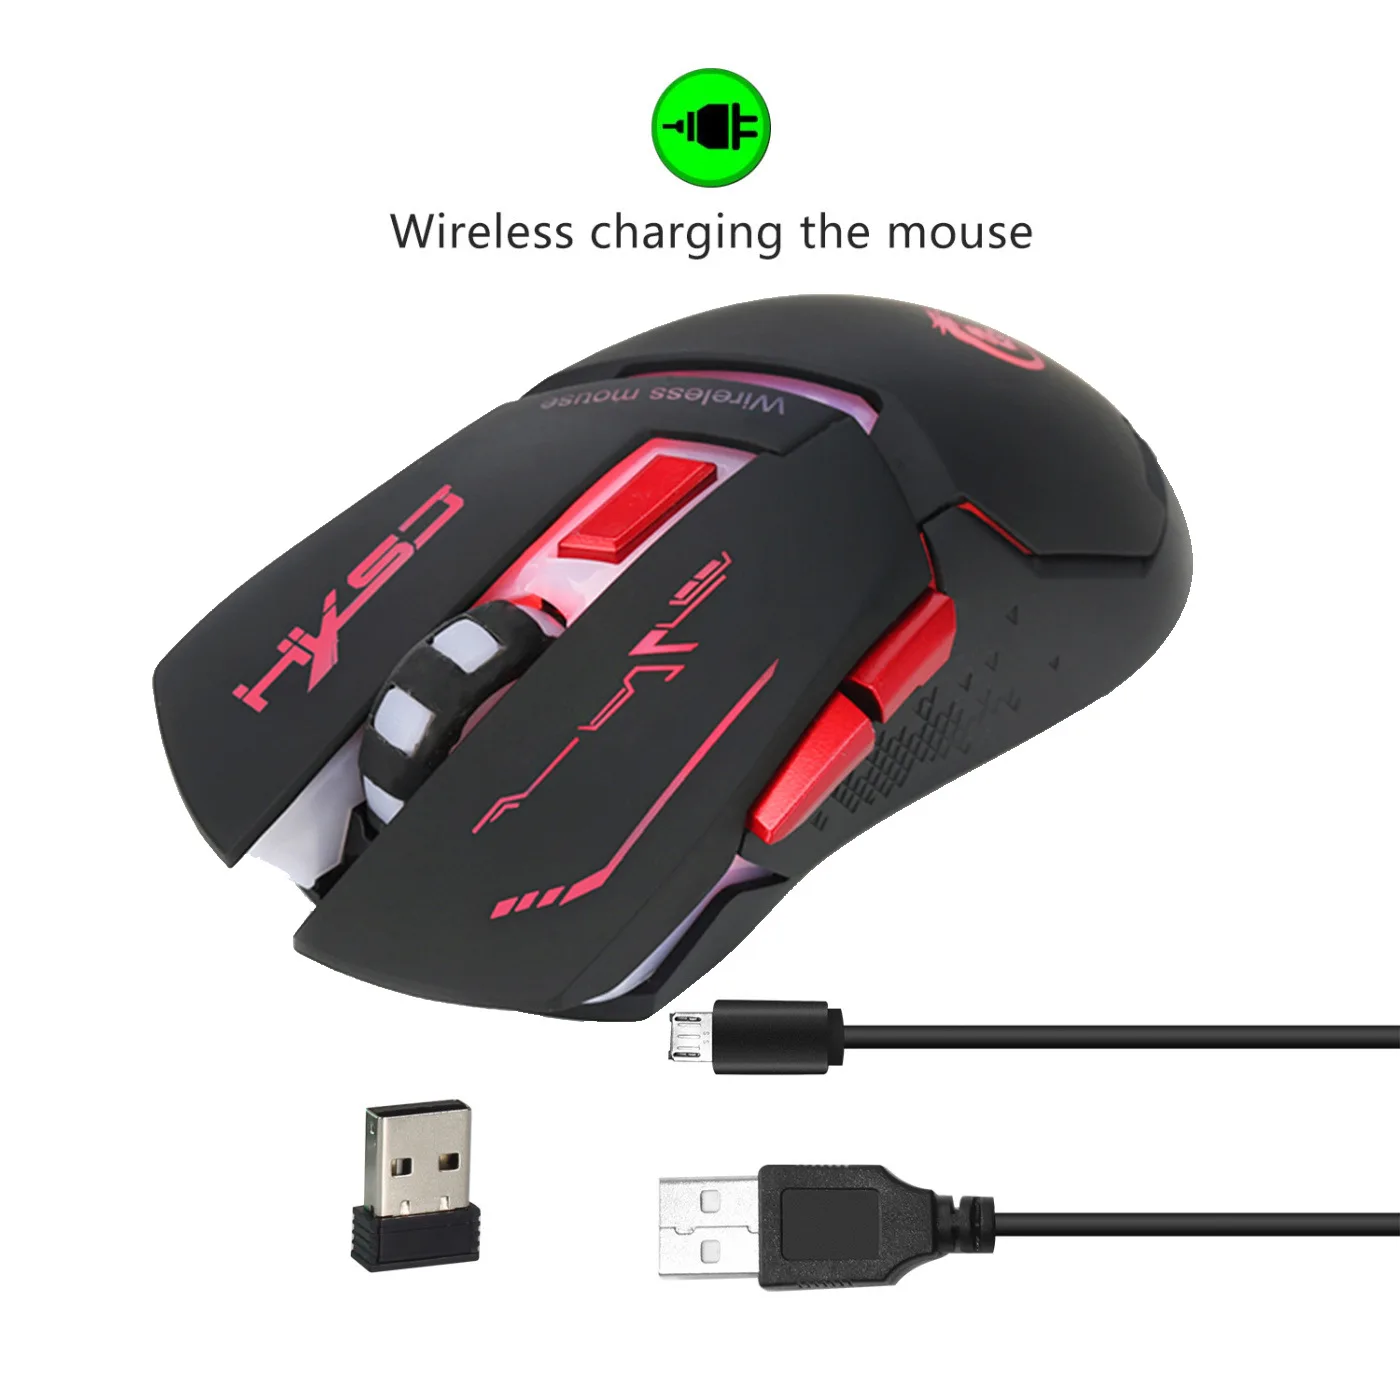 

Новая беспроводная перезаряжаемая мышь X30 2,4G USB цветная игровая мышь RGB с подсветкой 2400DPI 6 кнопок беспроводная мышь для ПК ноутбука